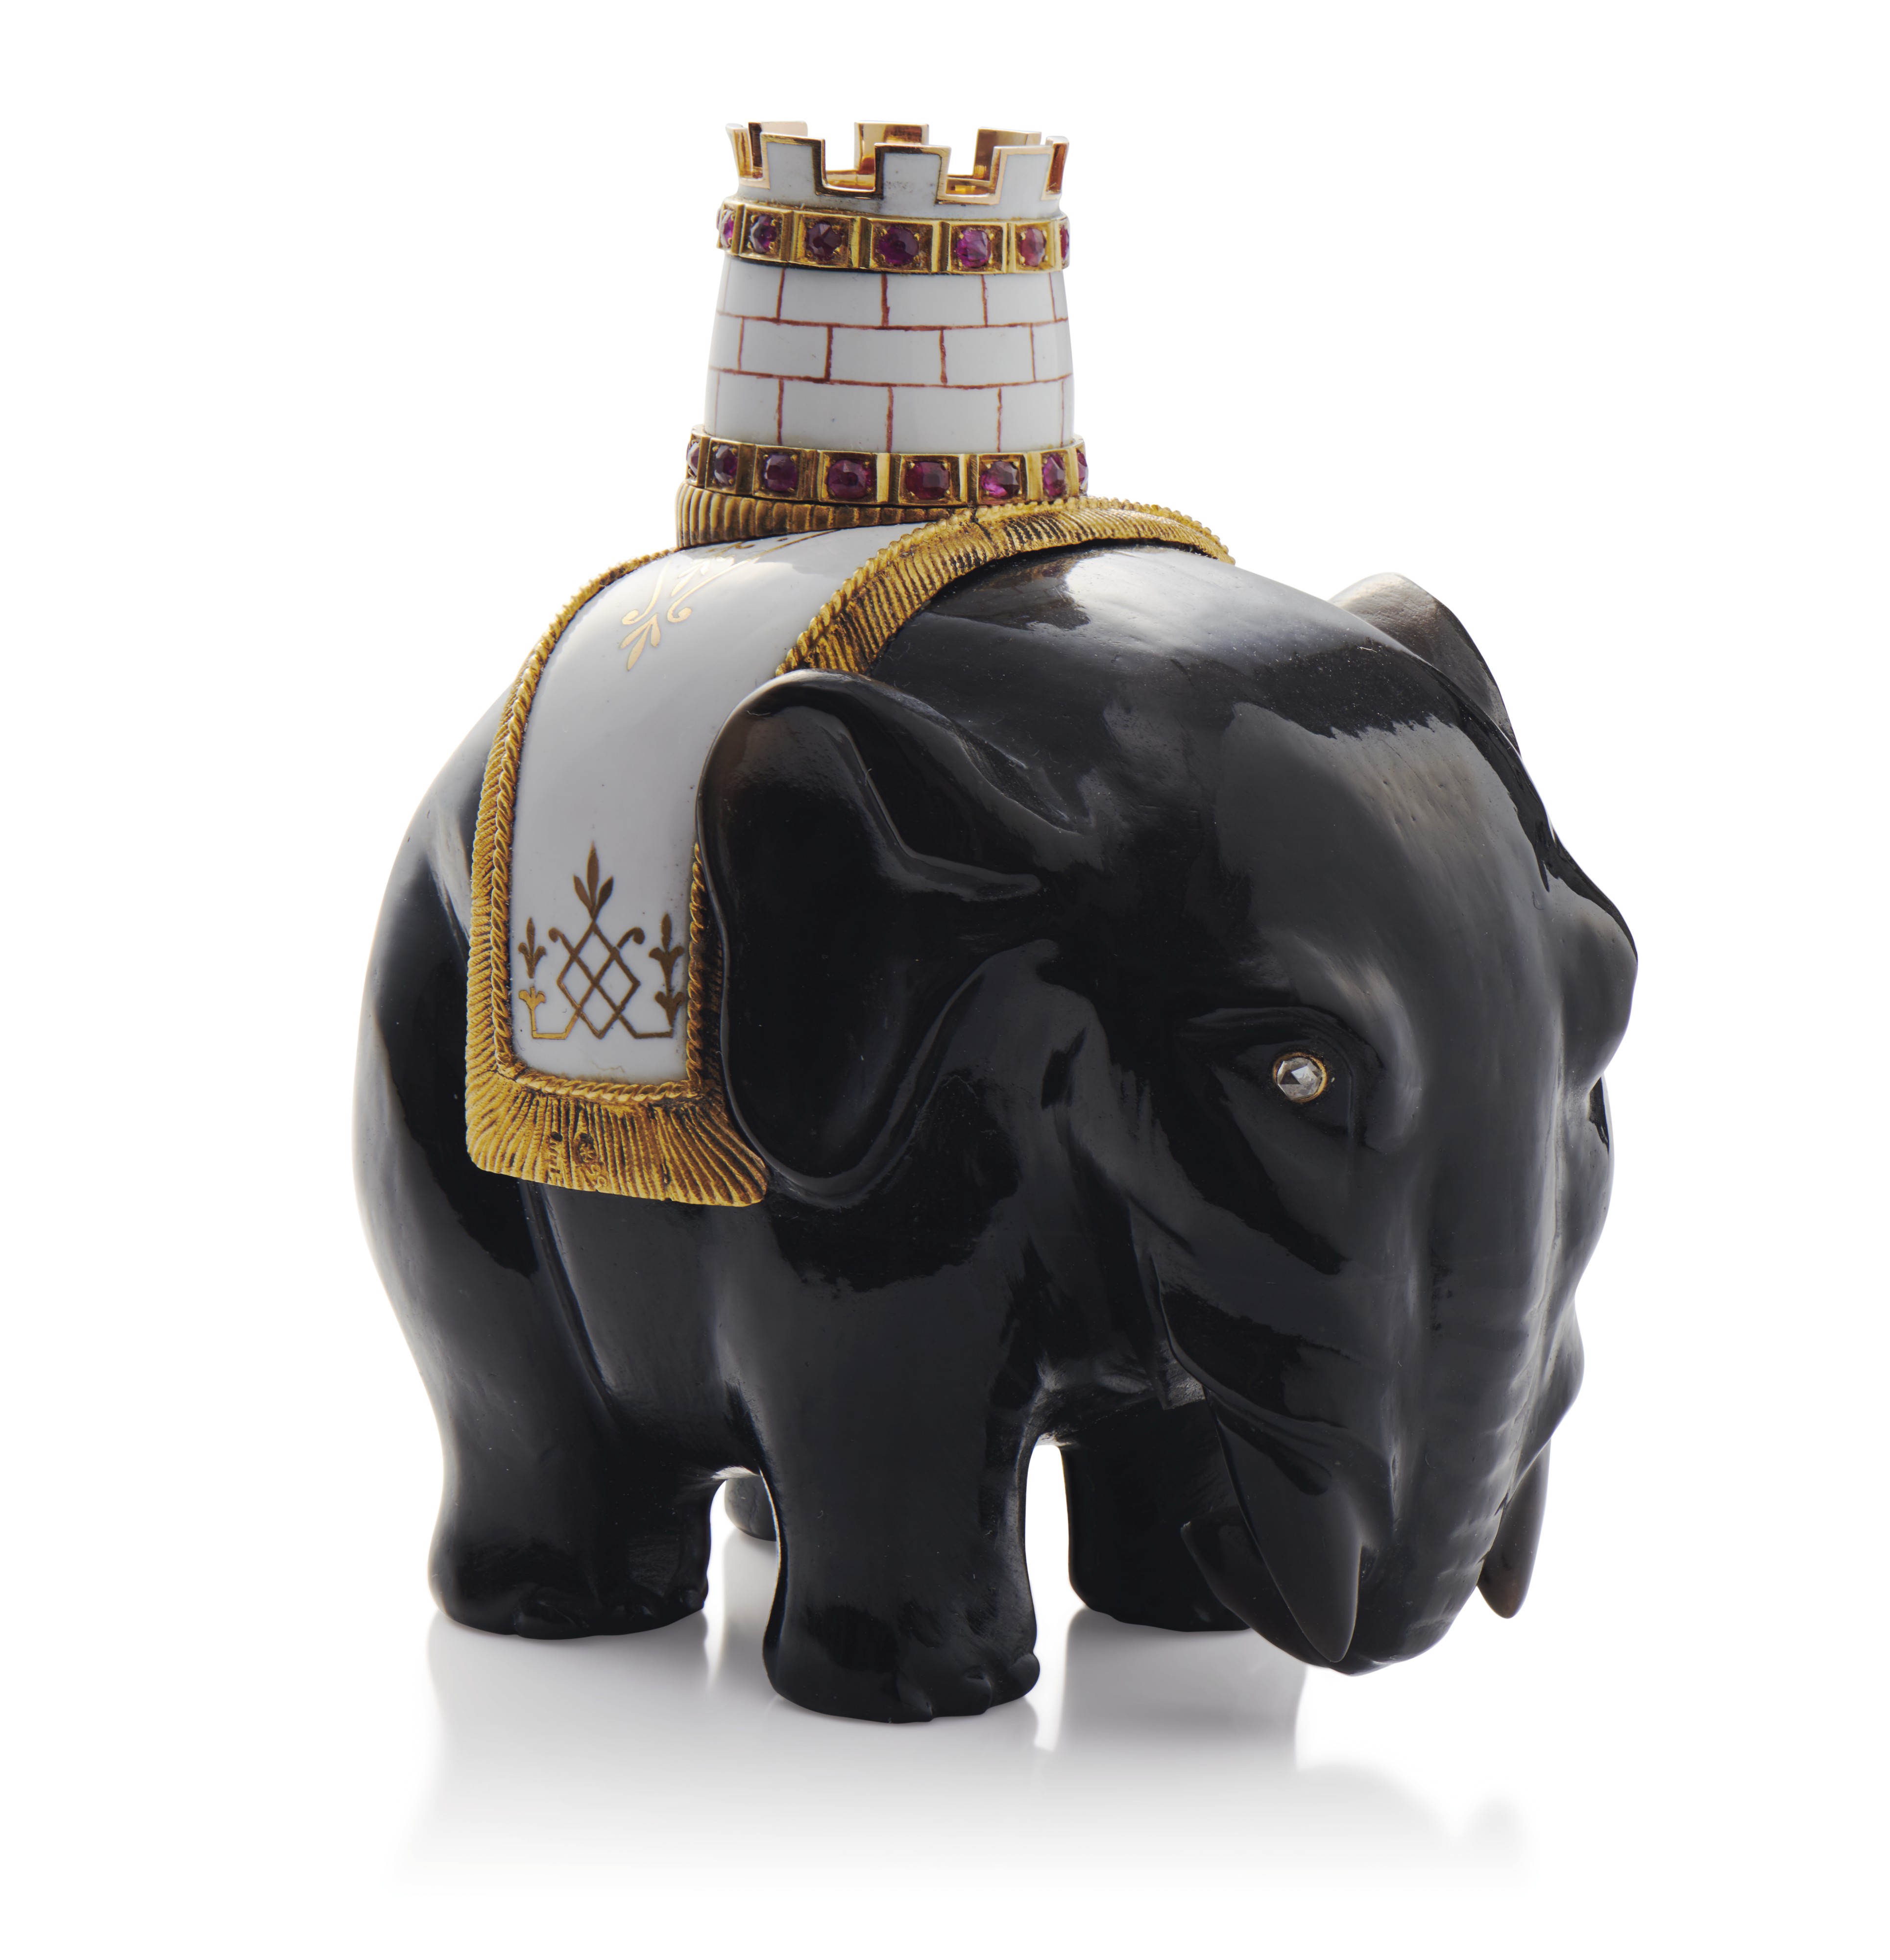 фигурка слона с башенкой из обсидиана, украшенная золотом, драгоценными камнями и эмалью